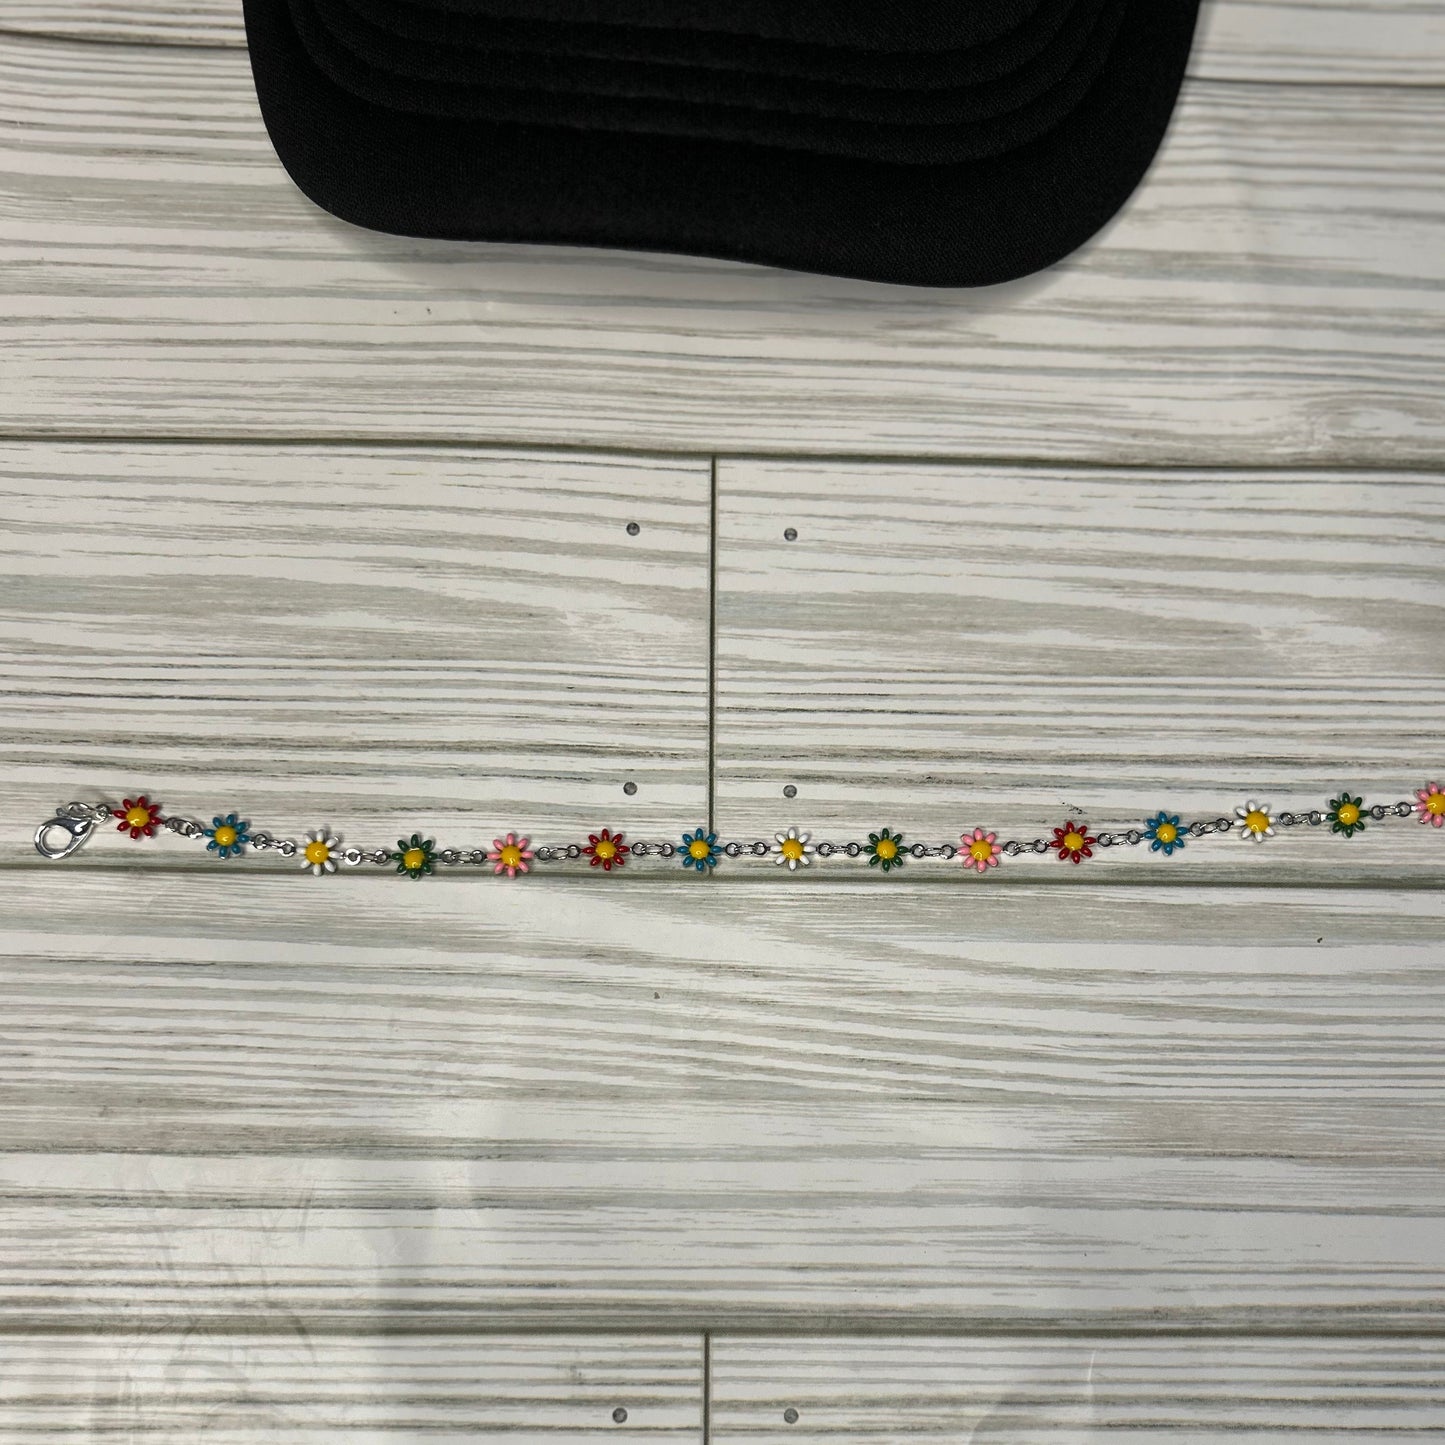 Daisy Delight: Multi-Colored Trucker Hat Chain